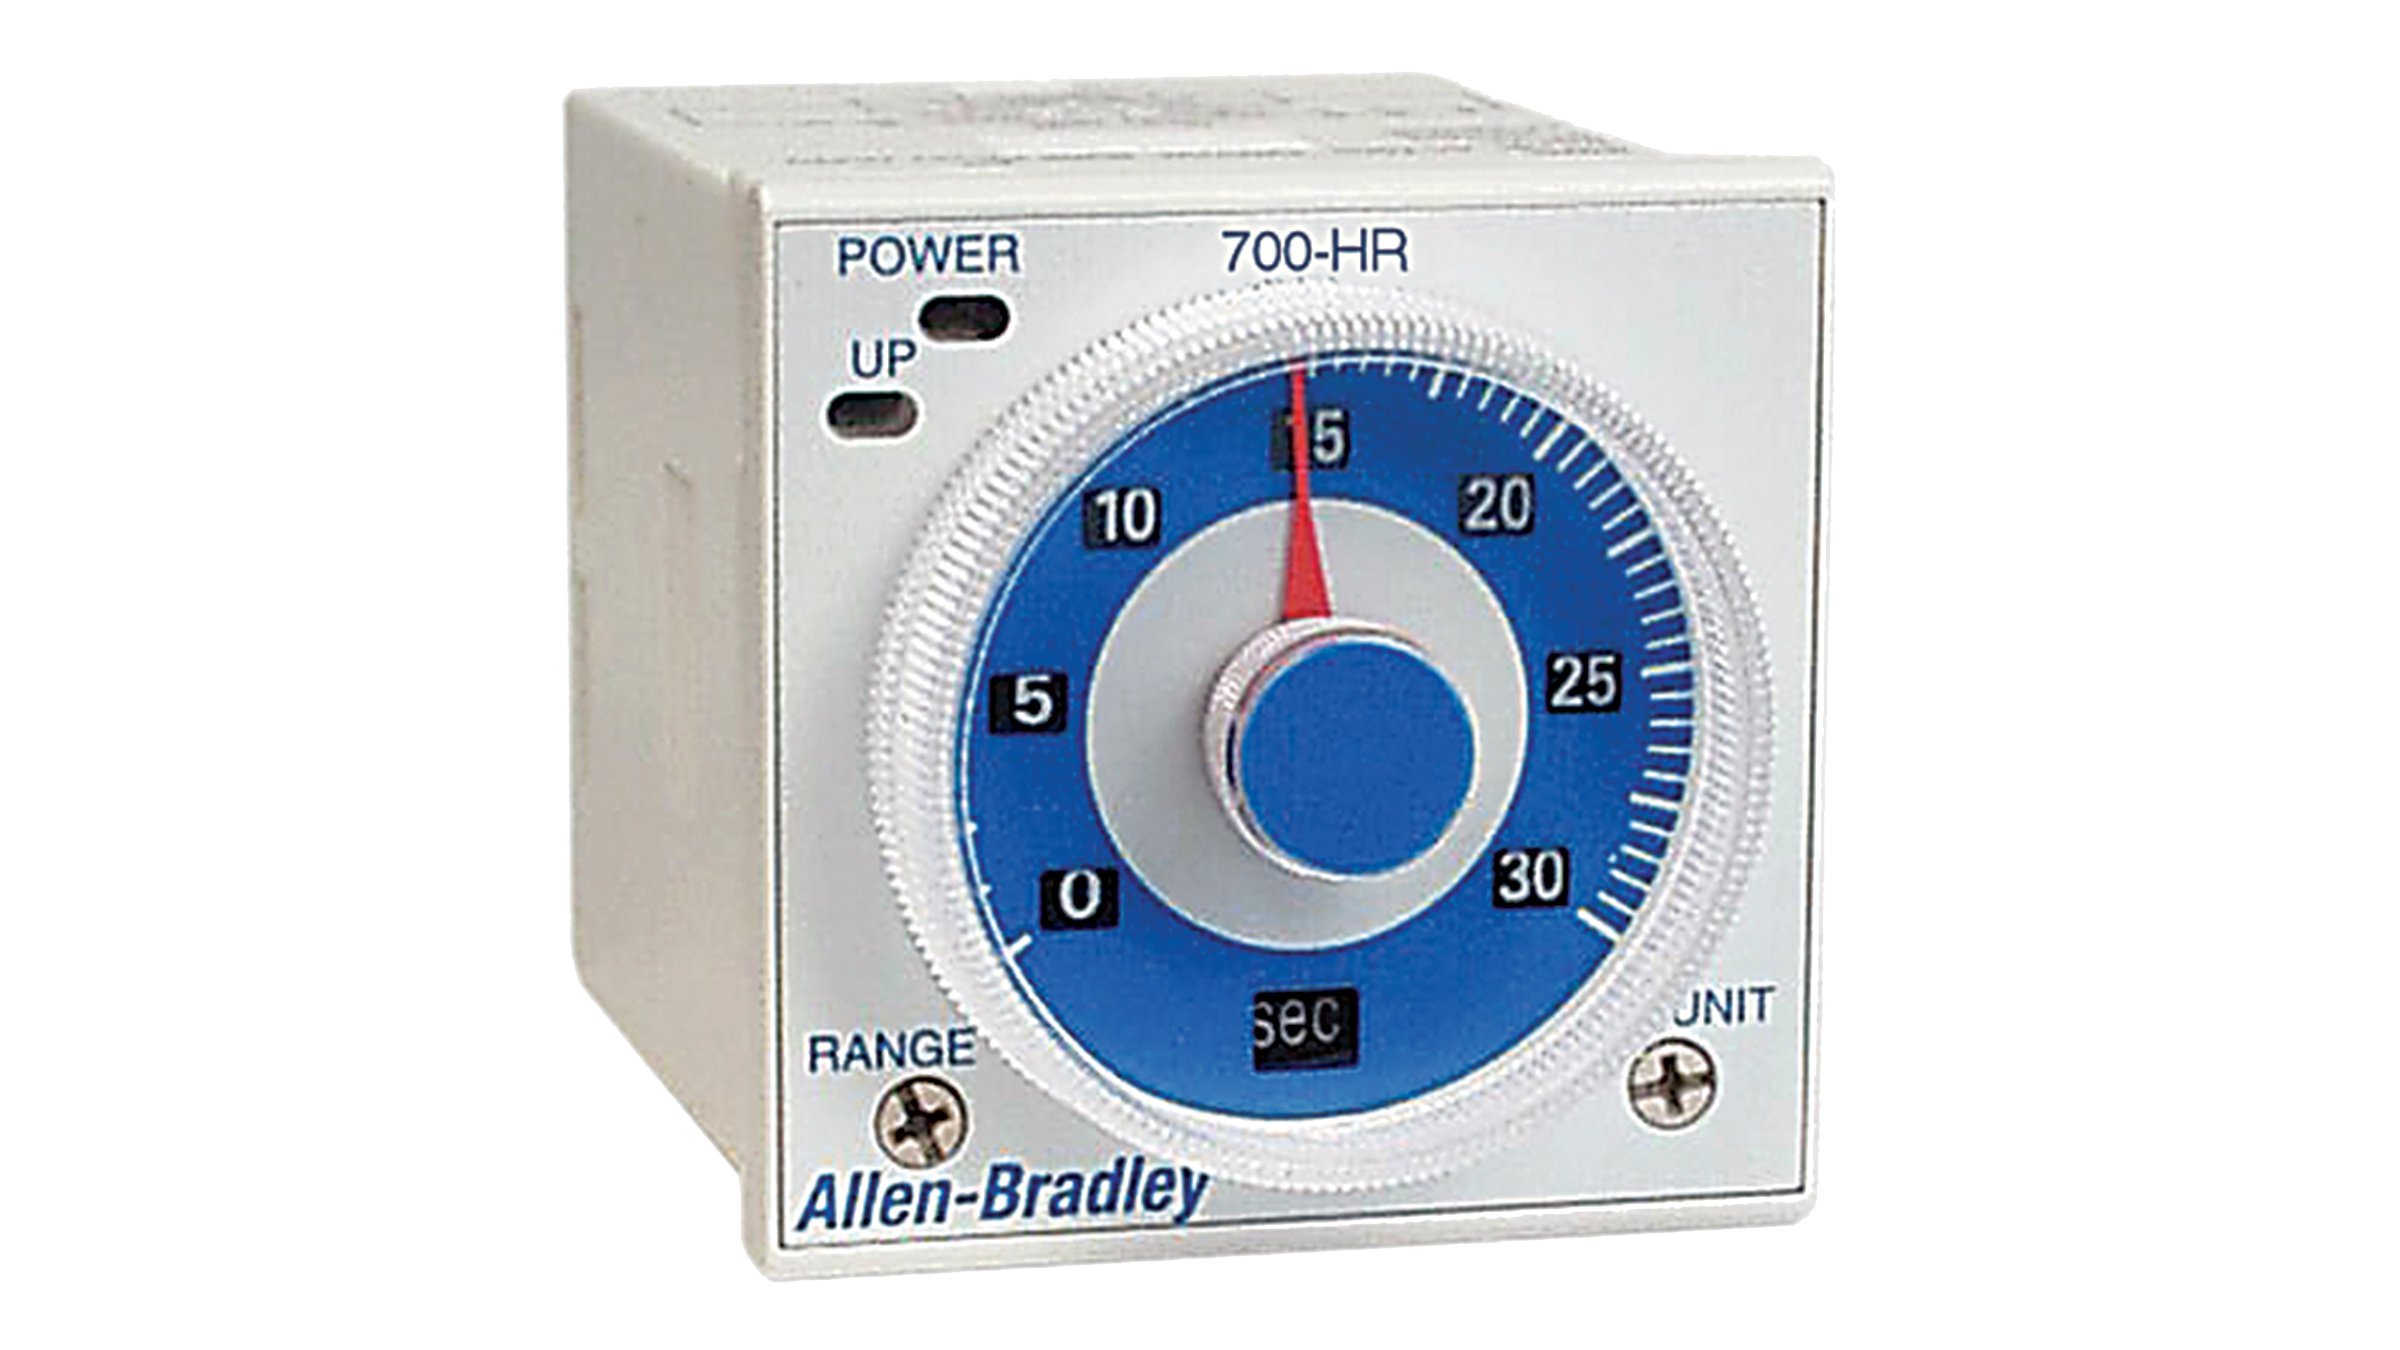 Los relés de temporización de dial Boletín 700-HR de Allen-Bradley son relés de temporización que se montan directamente en un conector.